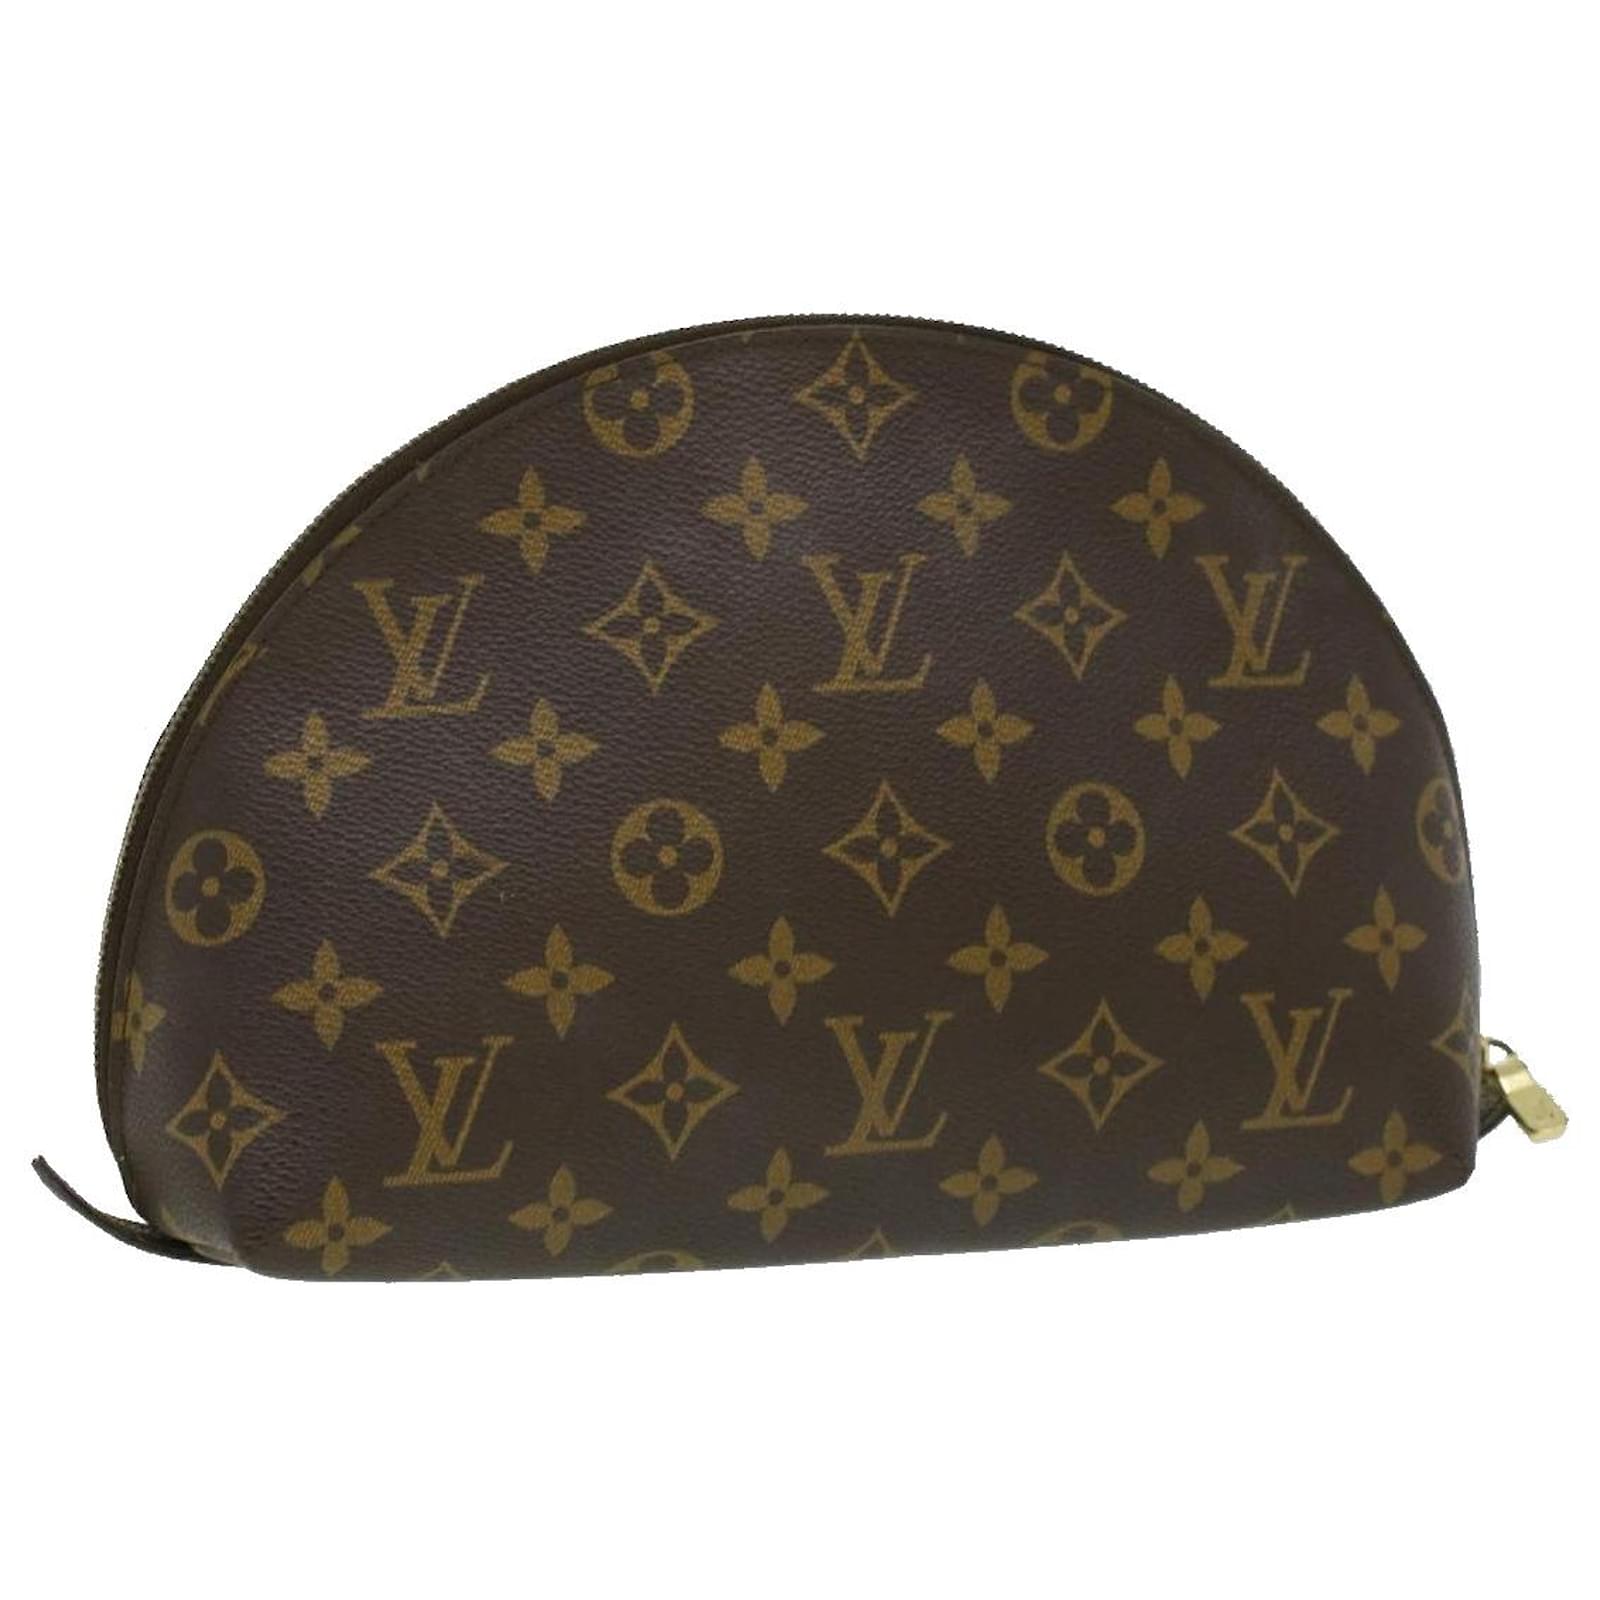 Authentic Louis Vuitton LV Clutch cosmetic Bag handbag